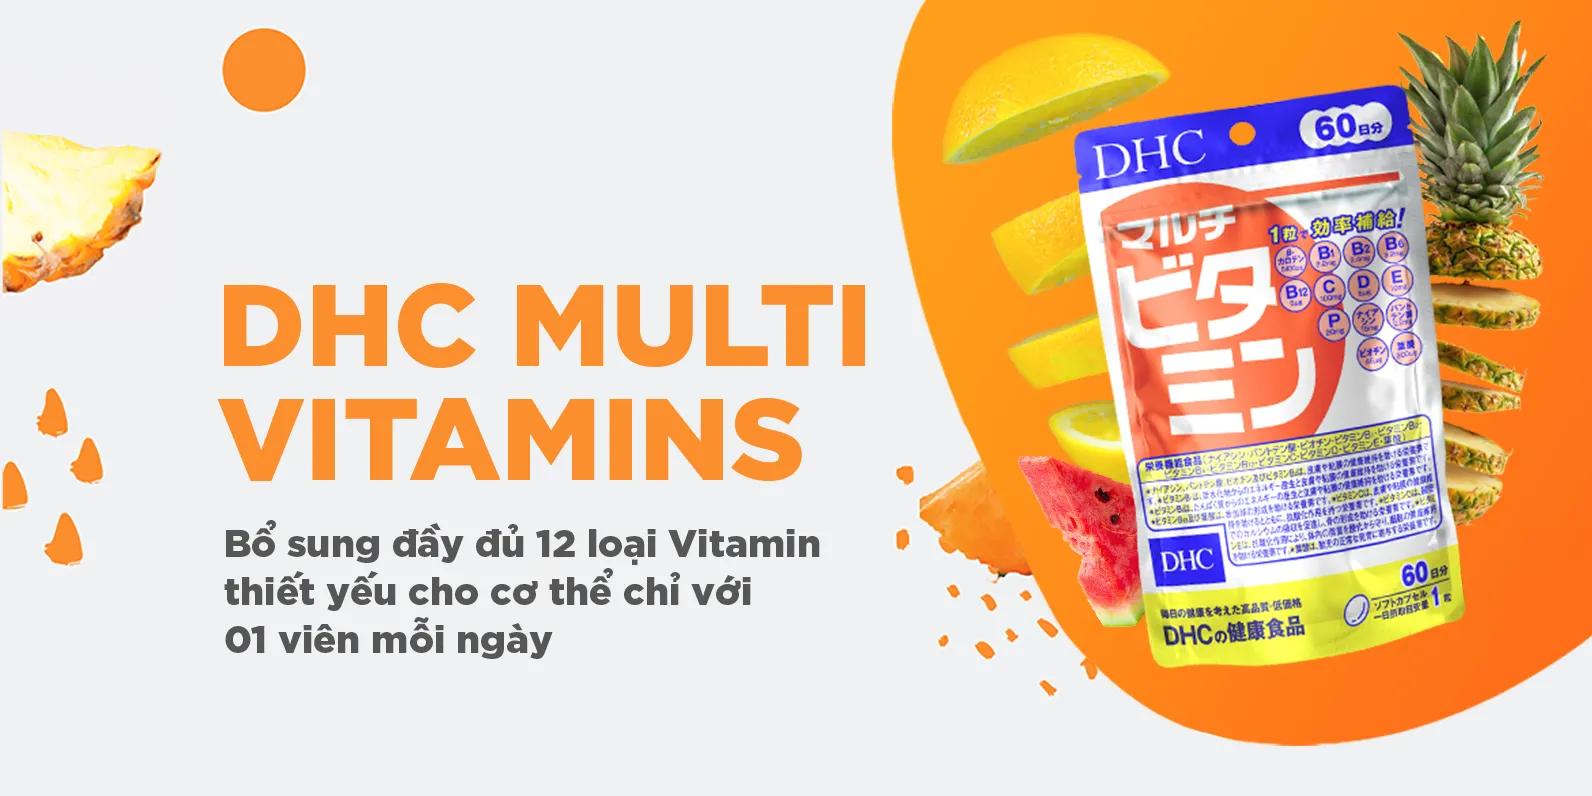 Vien uong Vitamin tong hop DHC3